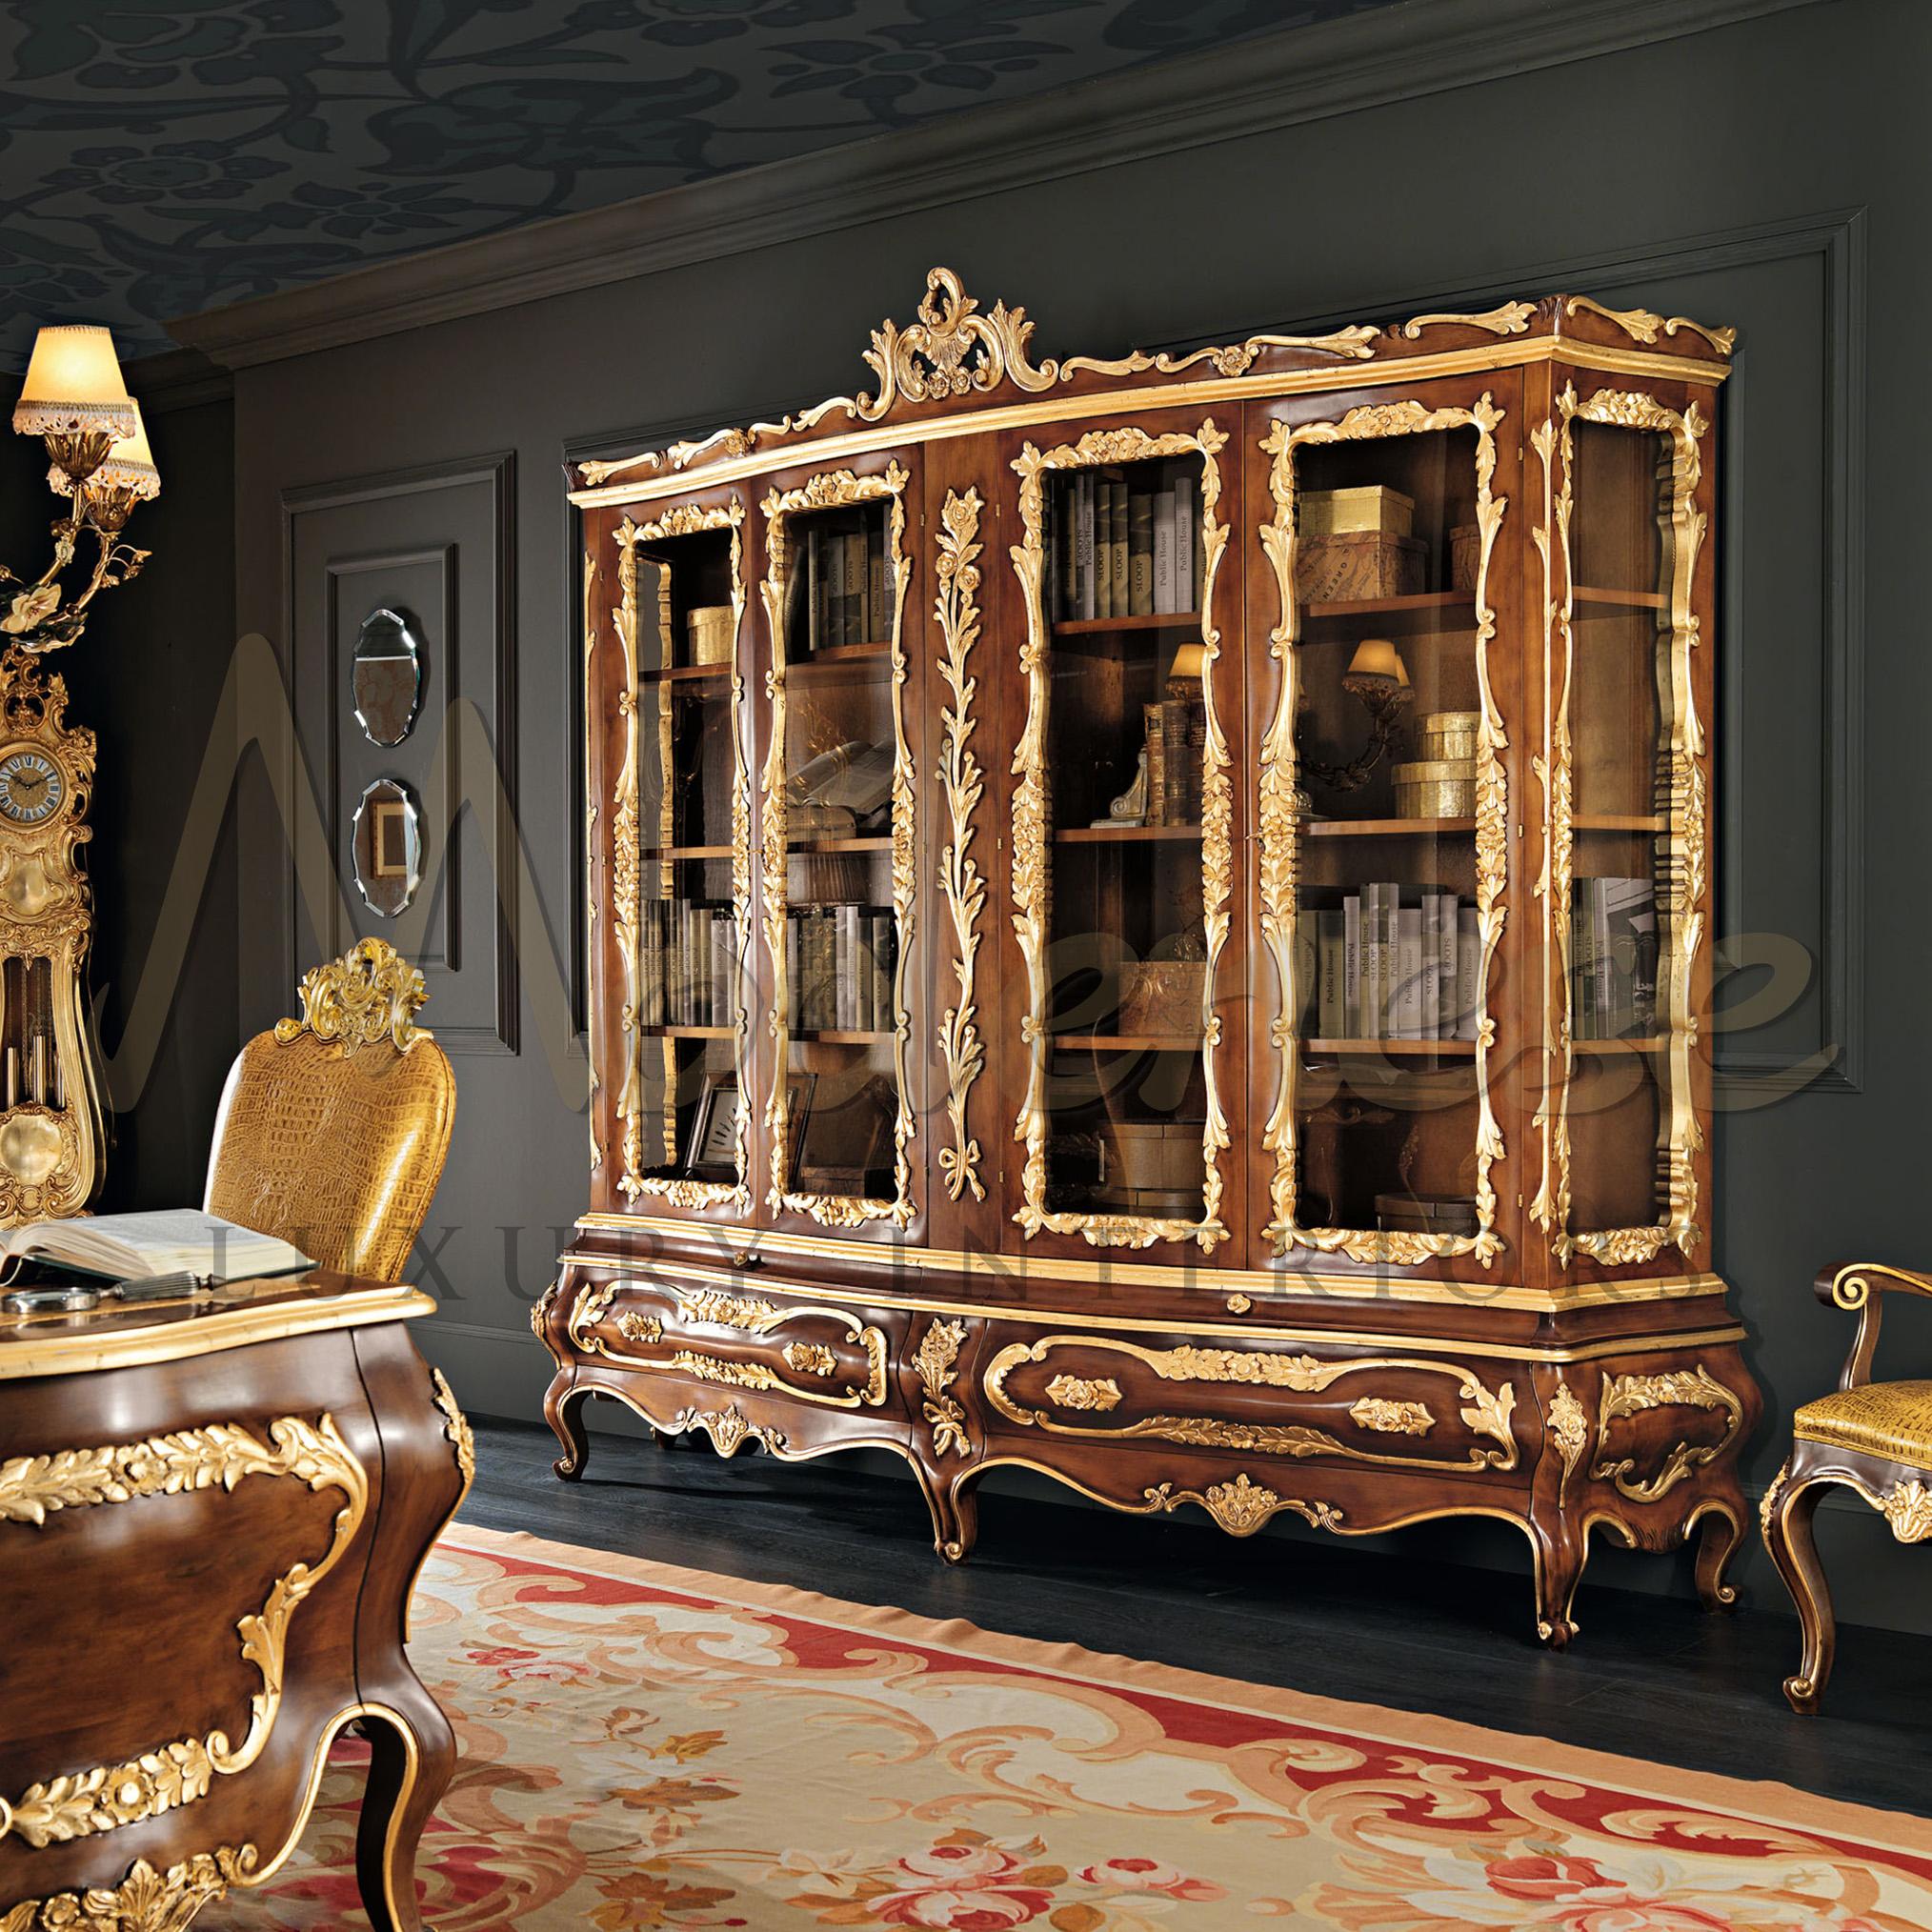 Modenese Gastone Interiors kann der perfekte Partner für die Inneneinrichtung Ihres Präsidentenprojekts sein. Dieses hochwertige viertürige Bücherregal aus Massivholz mit natürlicher Oberfläche und von Hand mit Blattgold verzierten Details ist